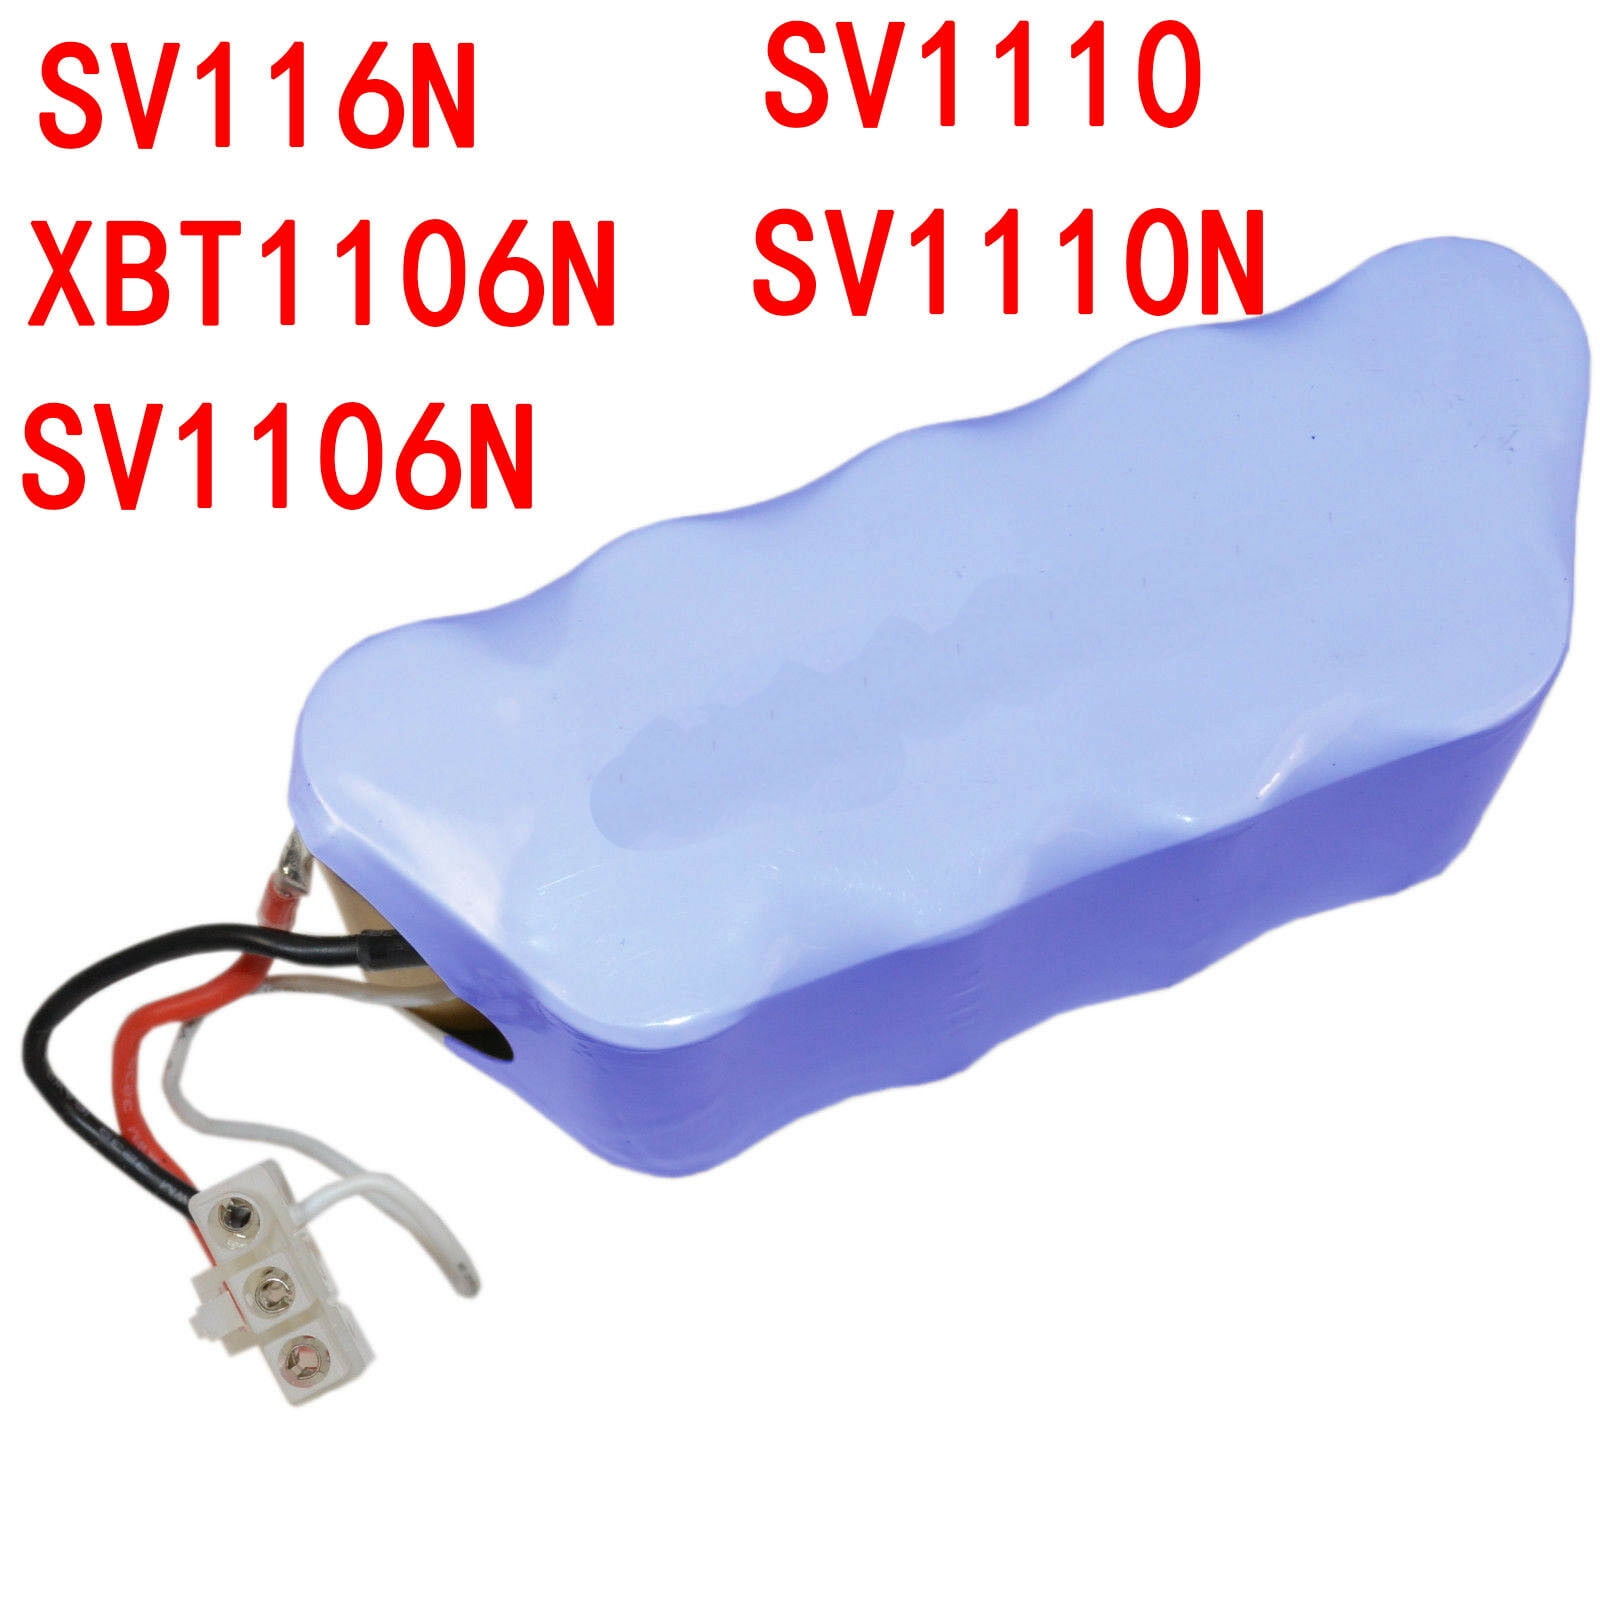 Battery pack 12V 3.0AH For Ryobi 130269003 130269012 HP412 9600 RYO9605 RY29550